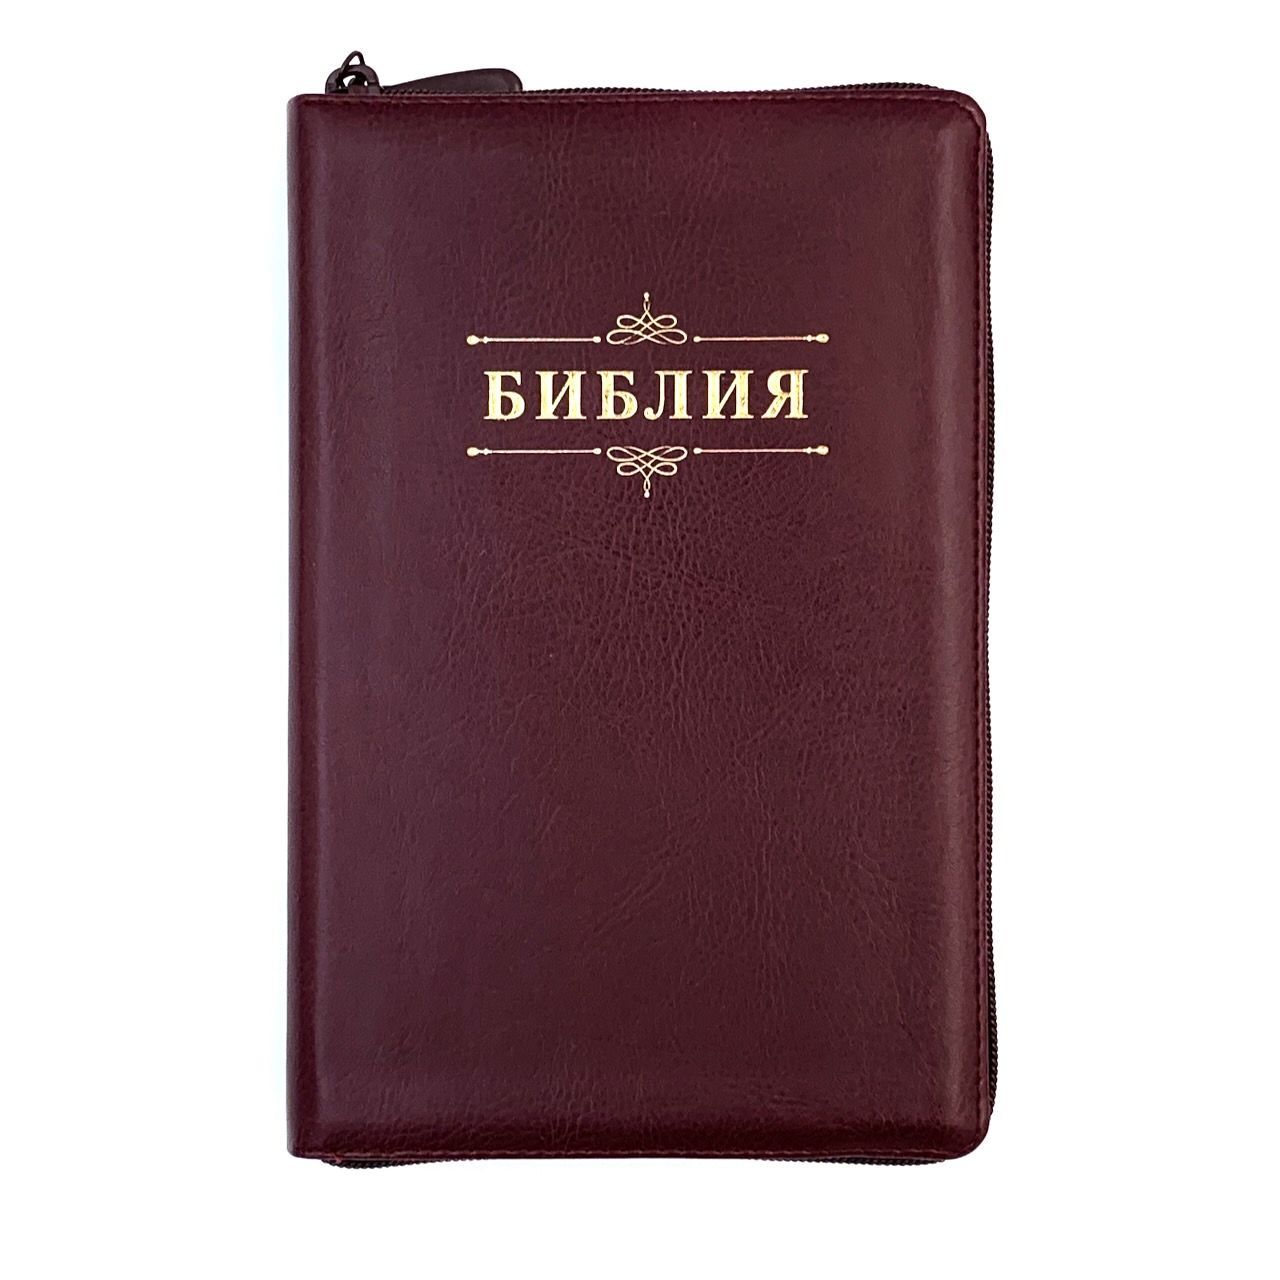 Библия 055zti код 23055-14 надпись "Библия", переплет из искусственной кожи на молнии с индексами, цвет темно-бордовый, средний формат, 143*220 мм